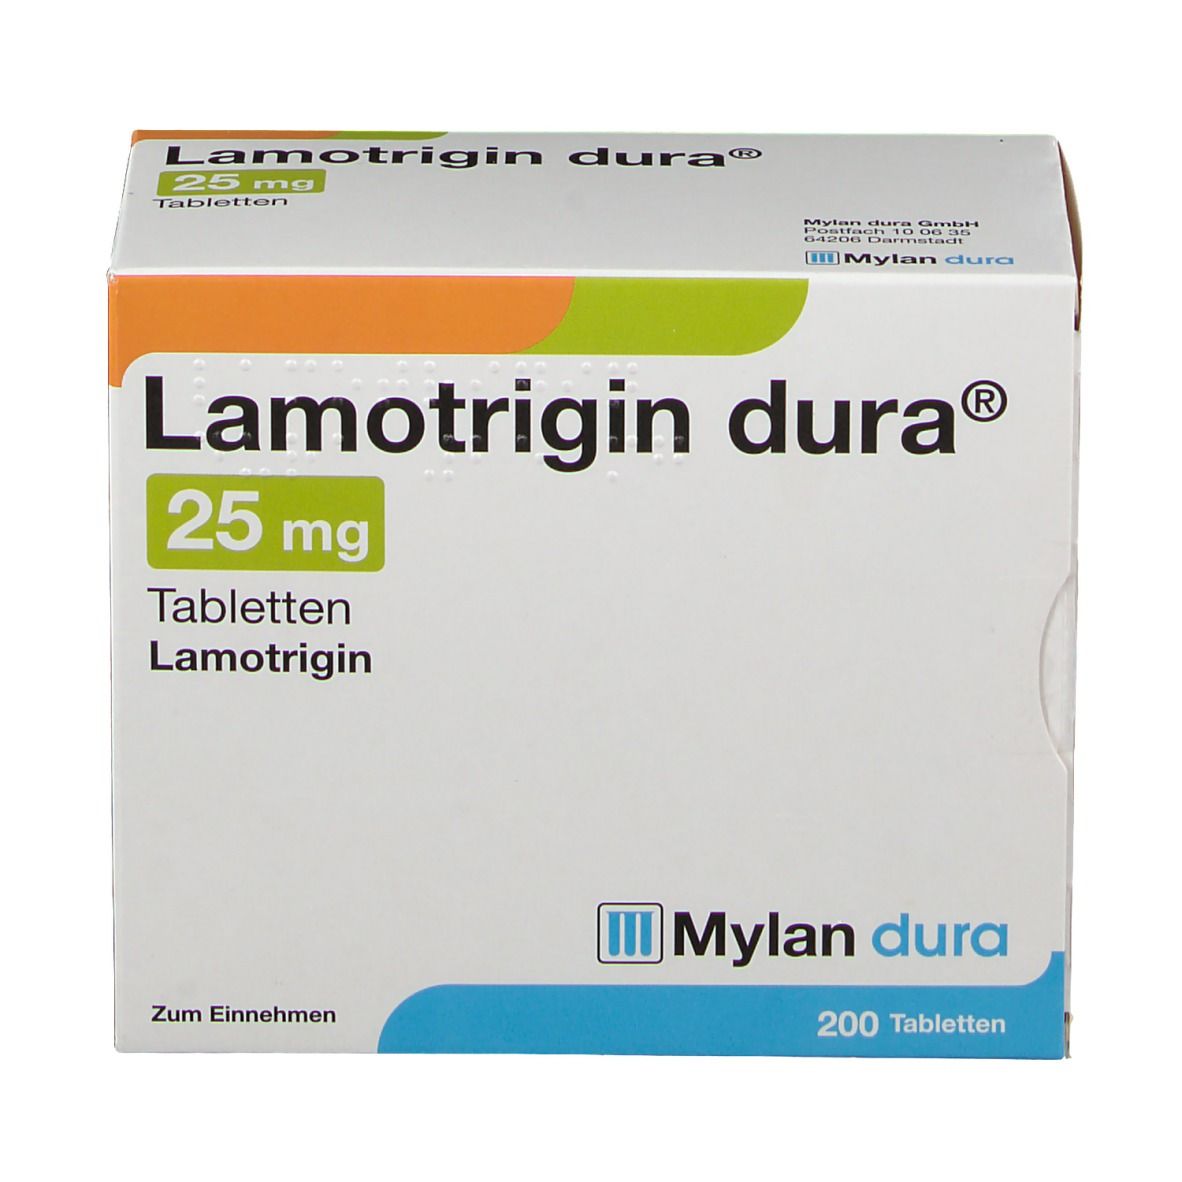 Lamotrigin dura® 25 mg